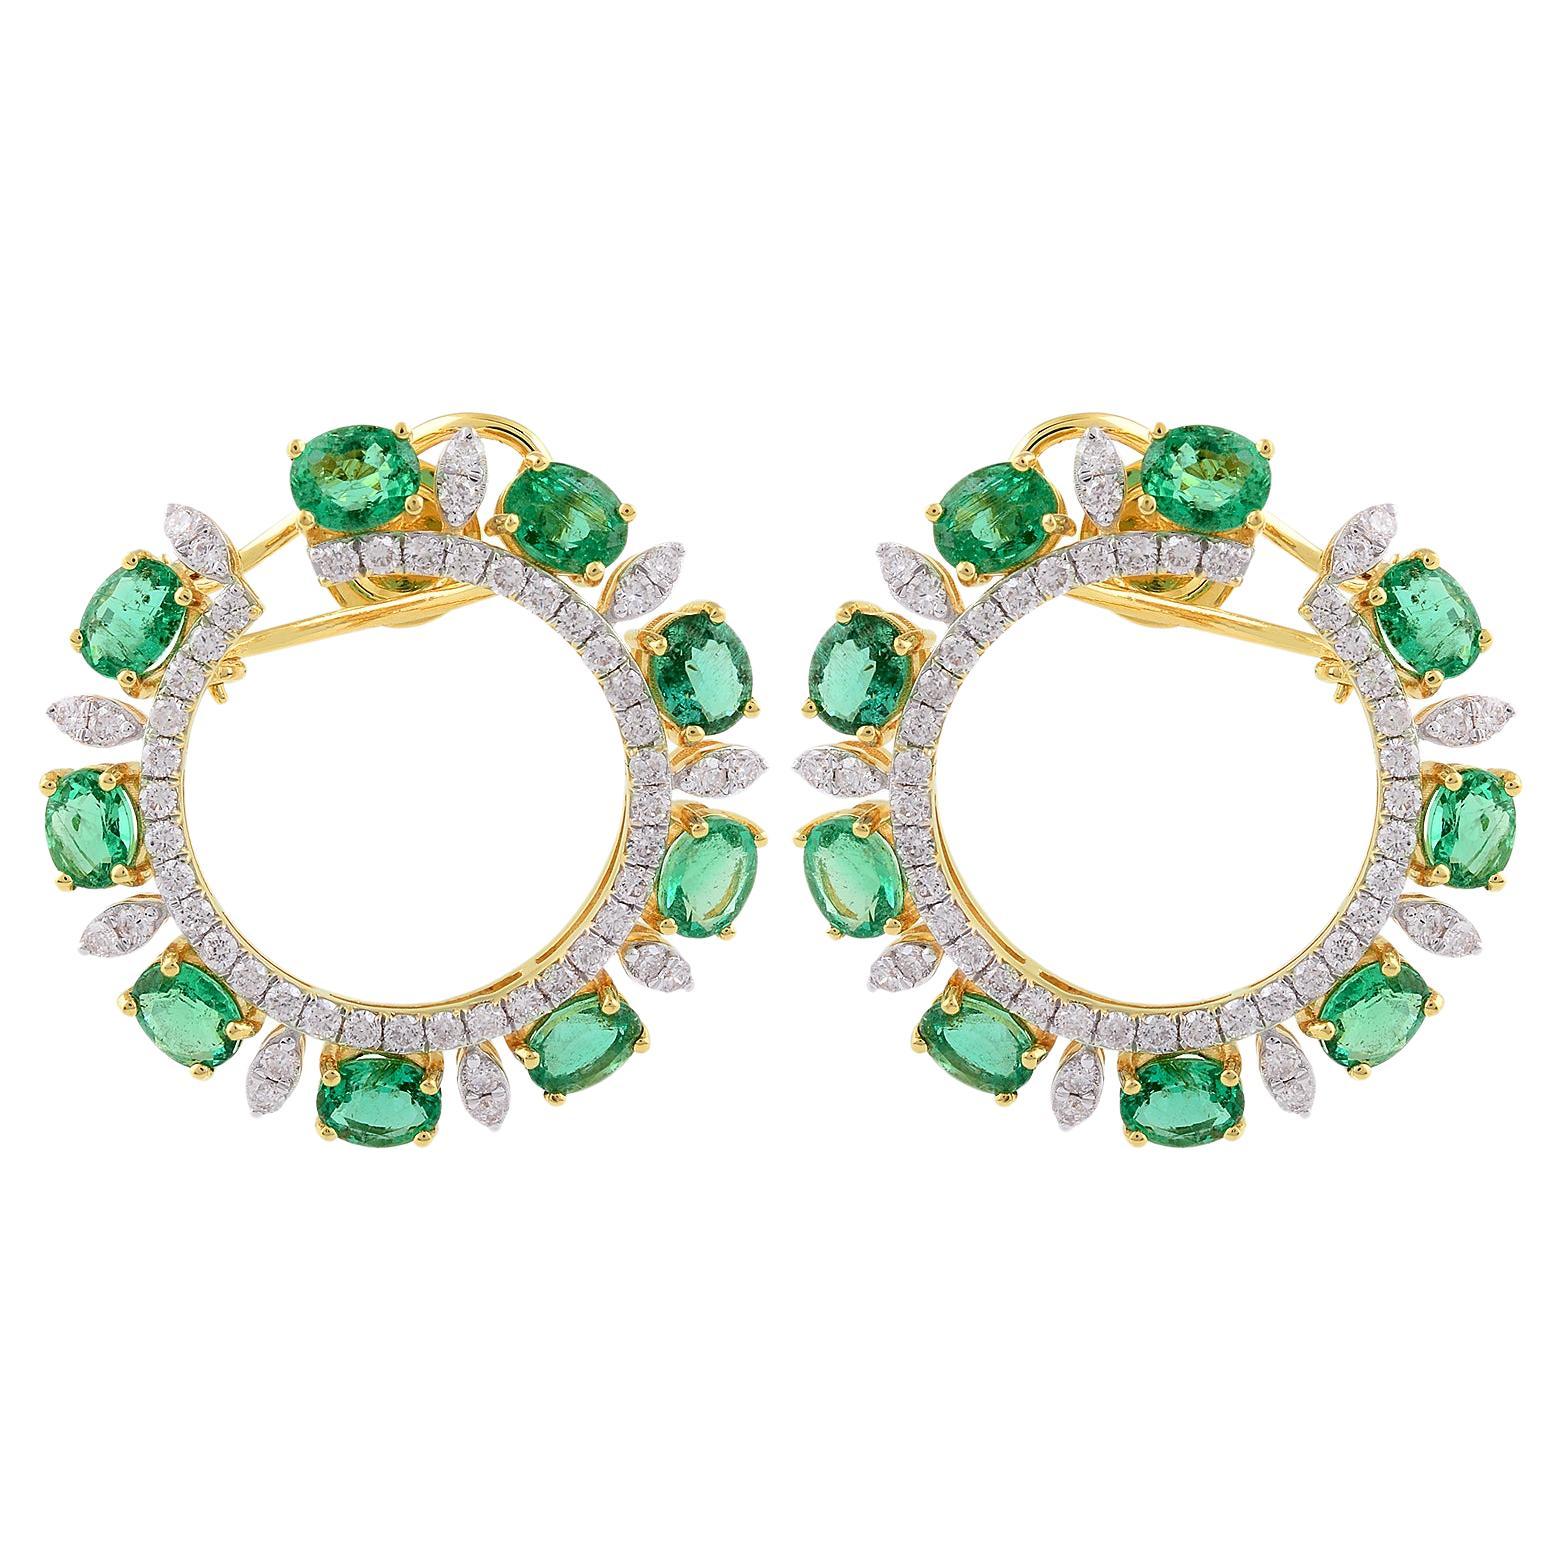 Oval Zambian Emerald Gemstone Lever Back Earrings Diamond 14 Karat Yellow Gold For Sale